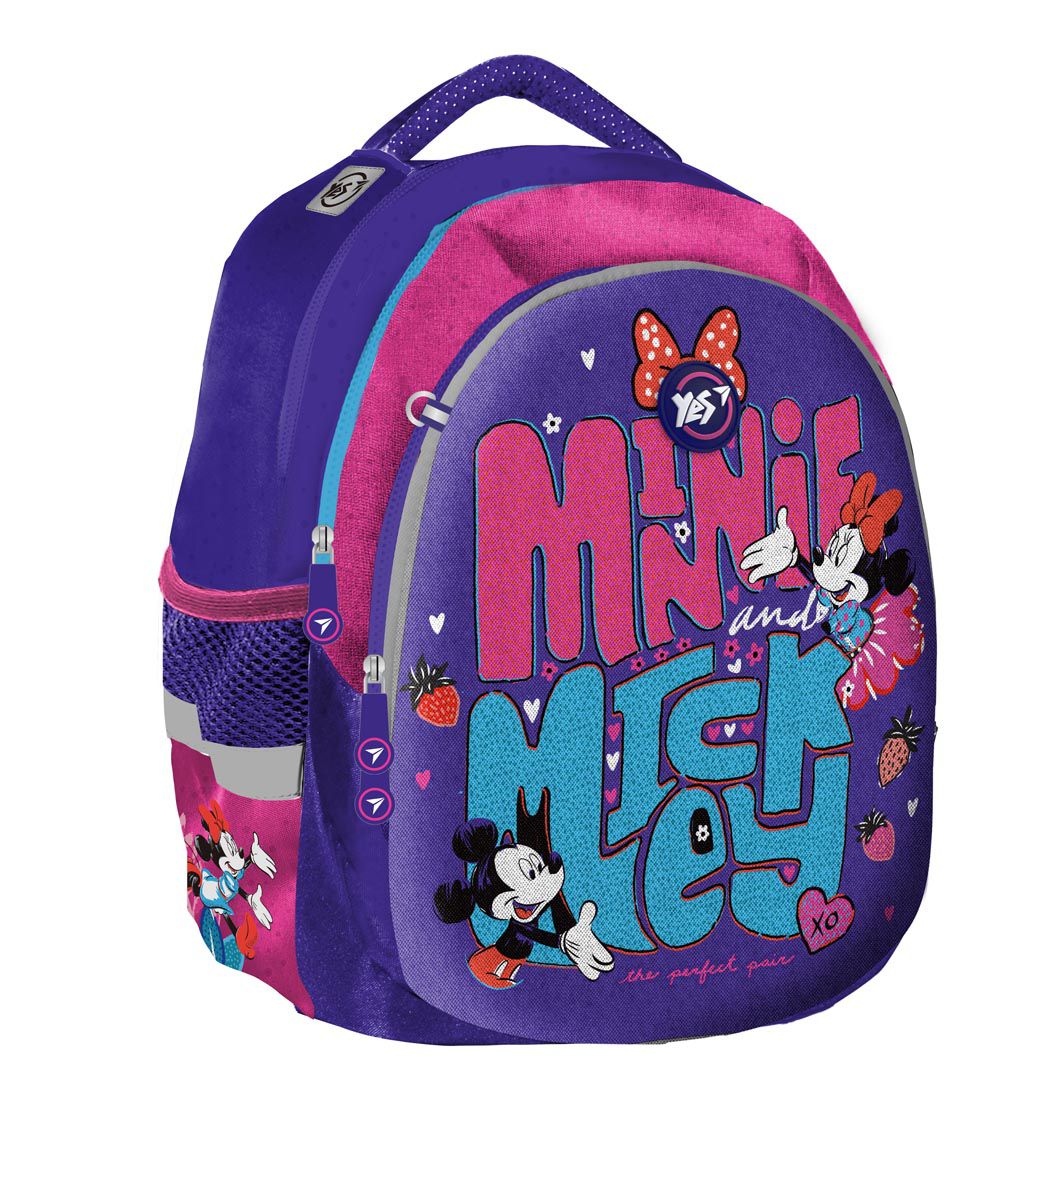 Рюкзак YES S-74 Minnie Mouse розовый/фиолетовый (558293)